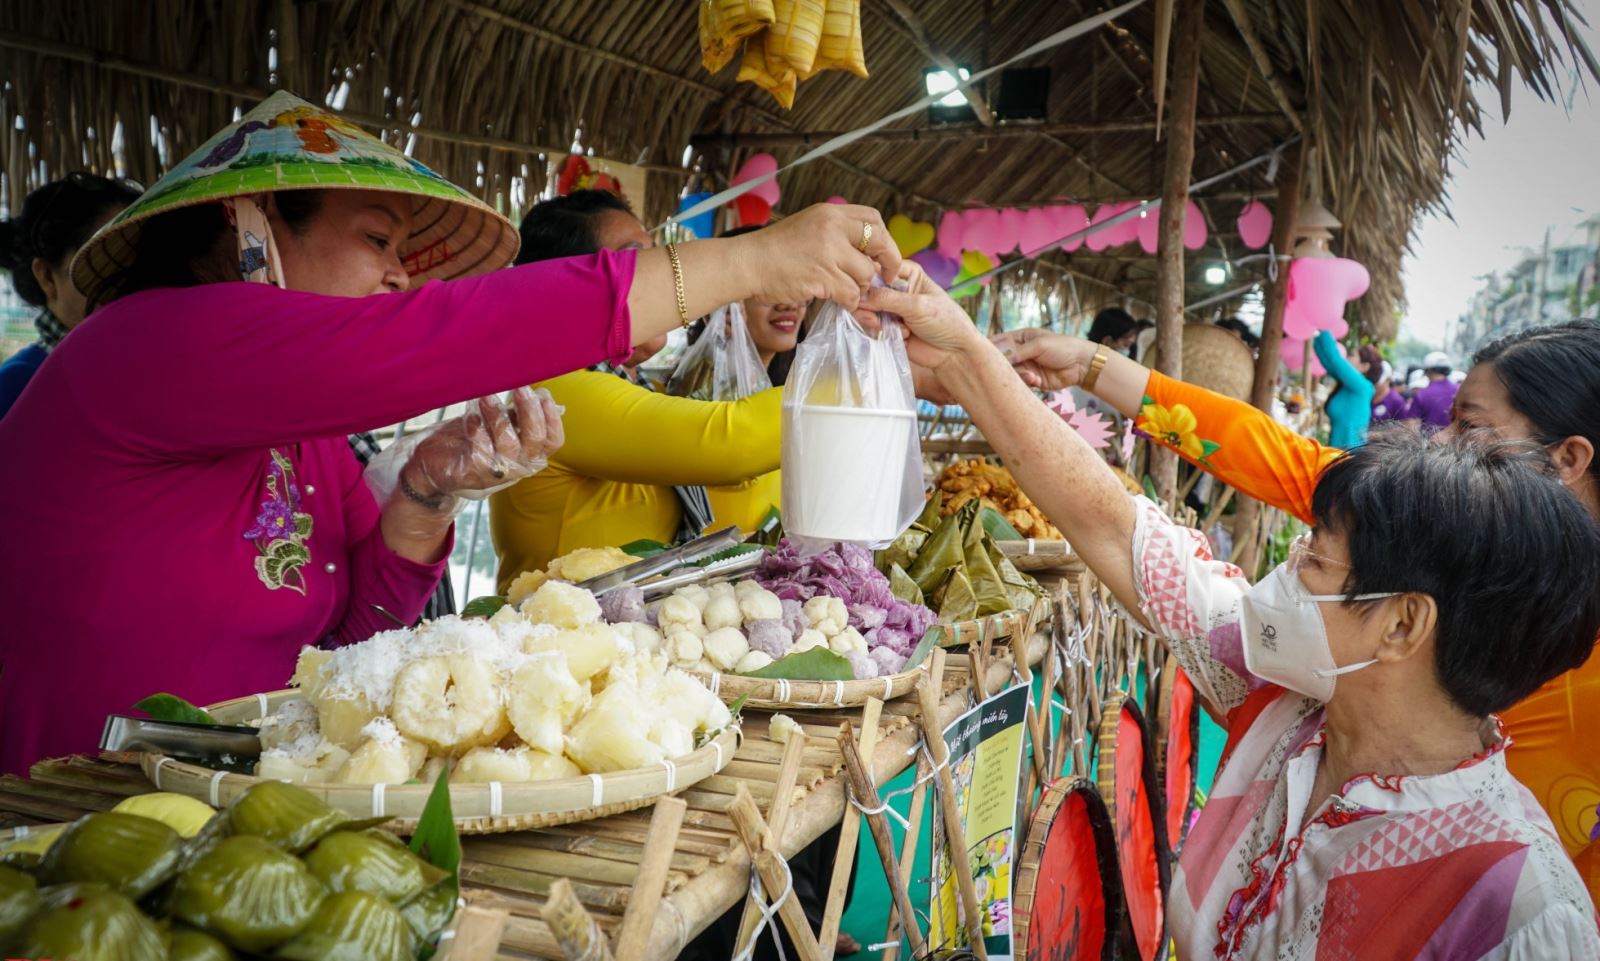 TP Hồ Chí Minh thu hút du khách bằng nhiều lễ hội trái cây đặc sắc - Ảnh 1.